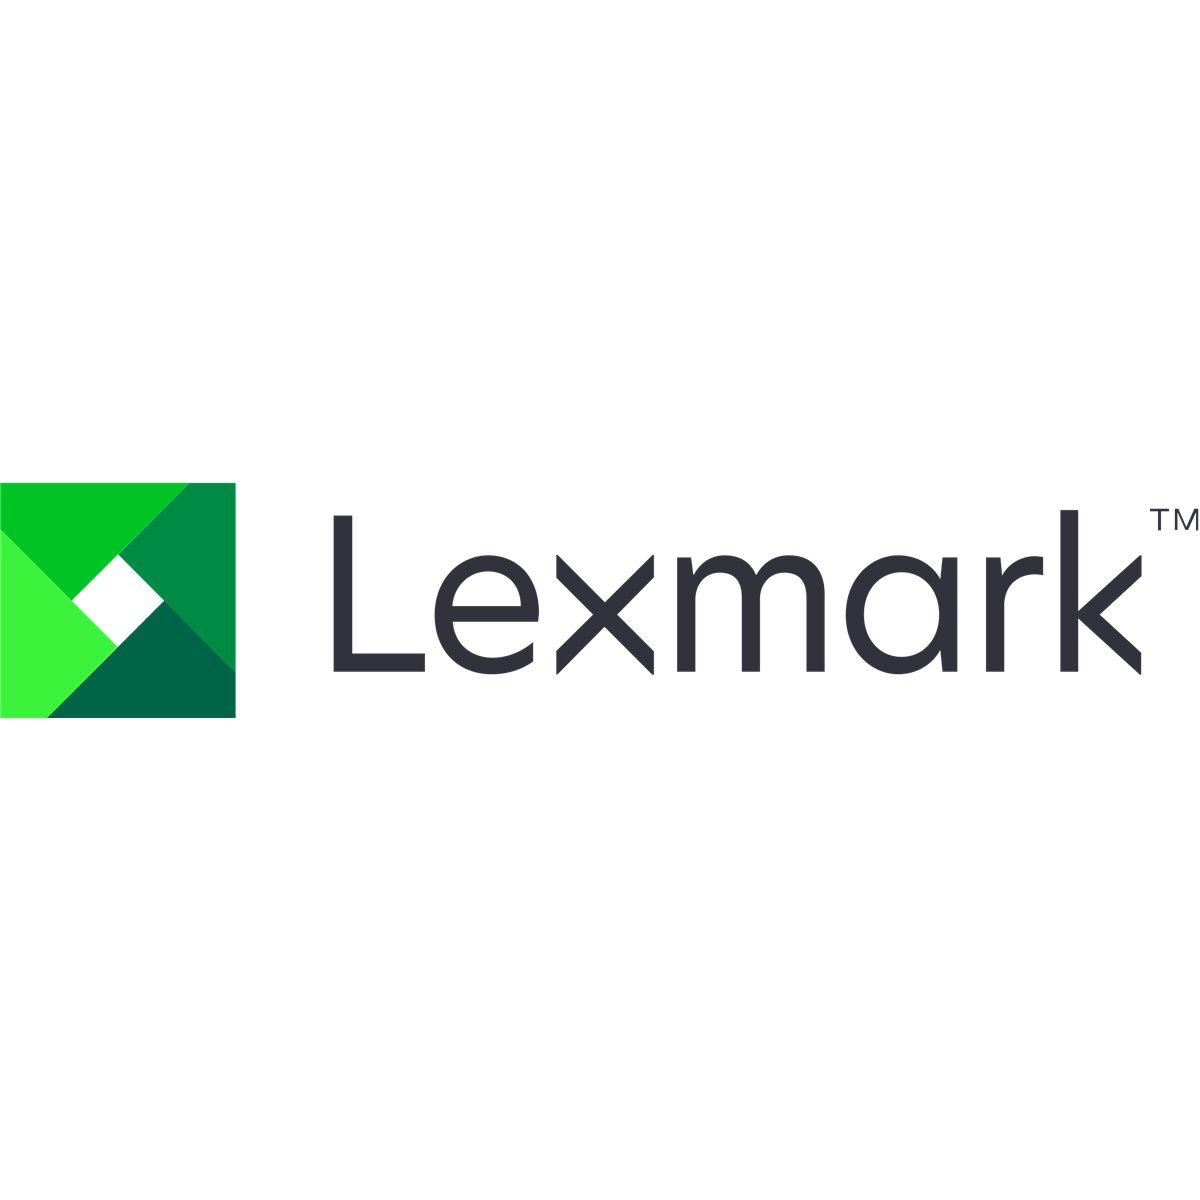 Lexmark Gear Shaft gear depot 450 pc